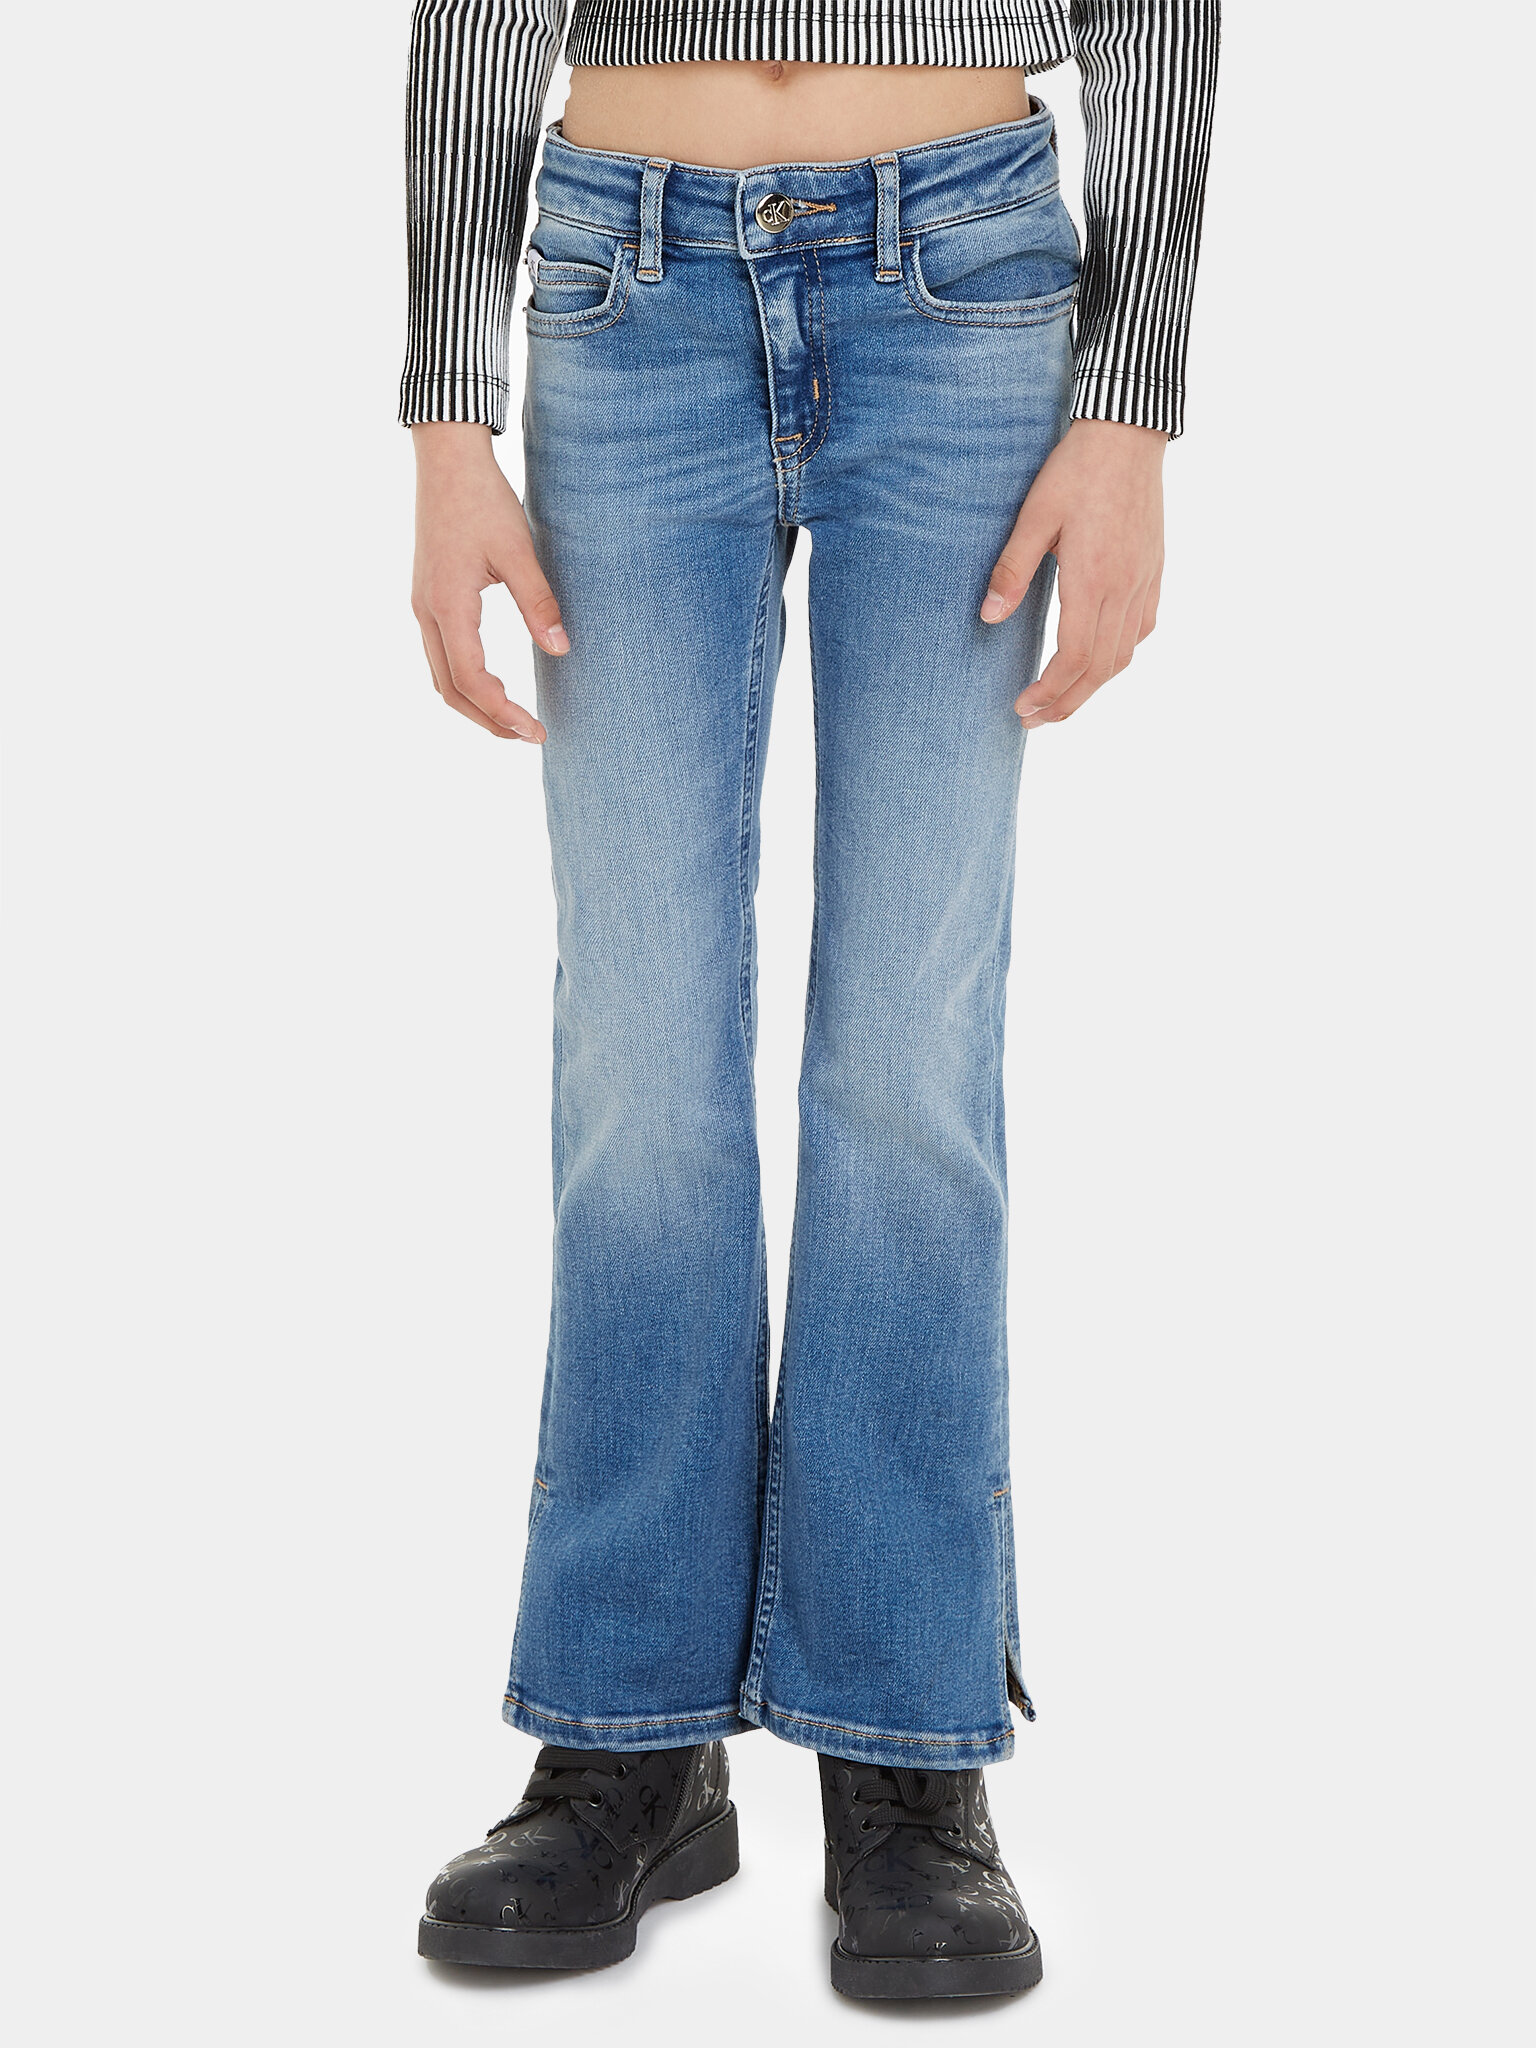 calvin-klein-jeans-jeans-split-ig0ig02163-blu-flare-fit-0000302813582